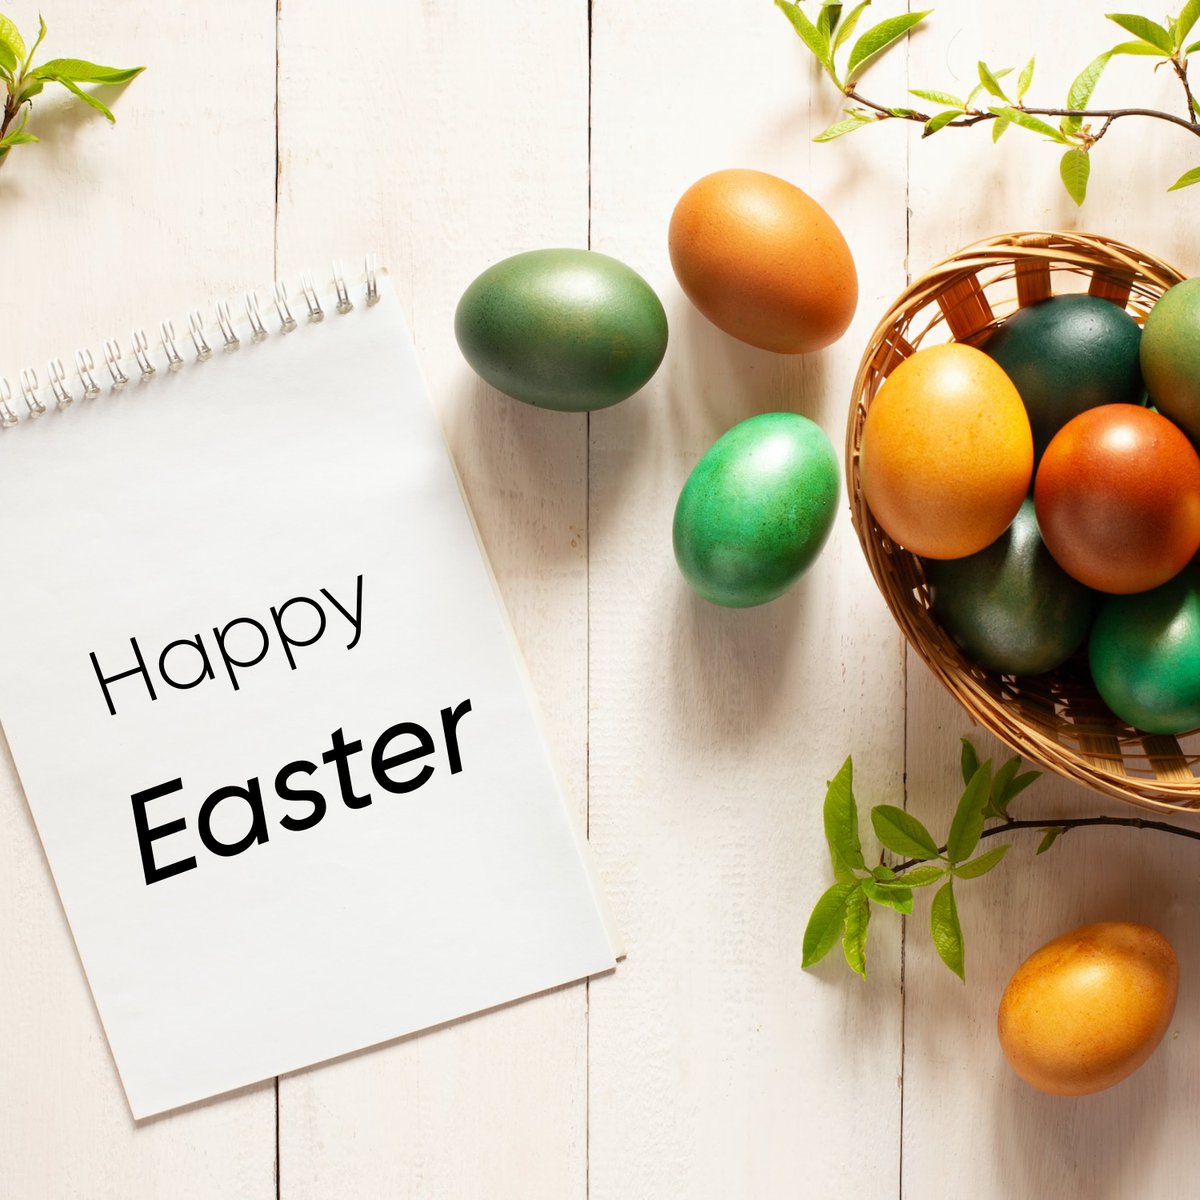 Es ist Ostern!!! Das schreit nach einer Ostereiersuche 🪺🪺 und dem totalen Familienspass 🥳
Geniesse den Tag mit unserem Hausdienstleistungen, das dir alle Aufgaben abnimmt, damit du dich auf das Fest mit deiner Familie konzentrieren kannst.

#happyeaster #easter #eastereggs